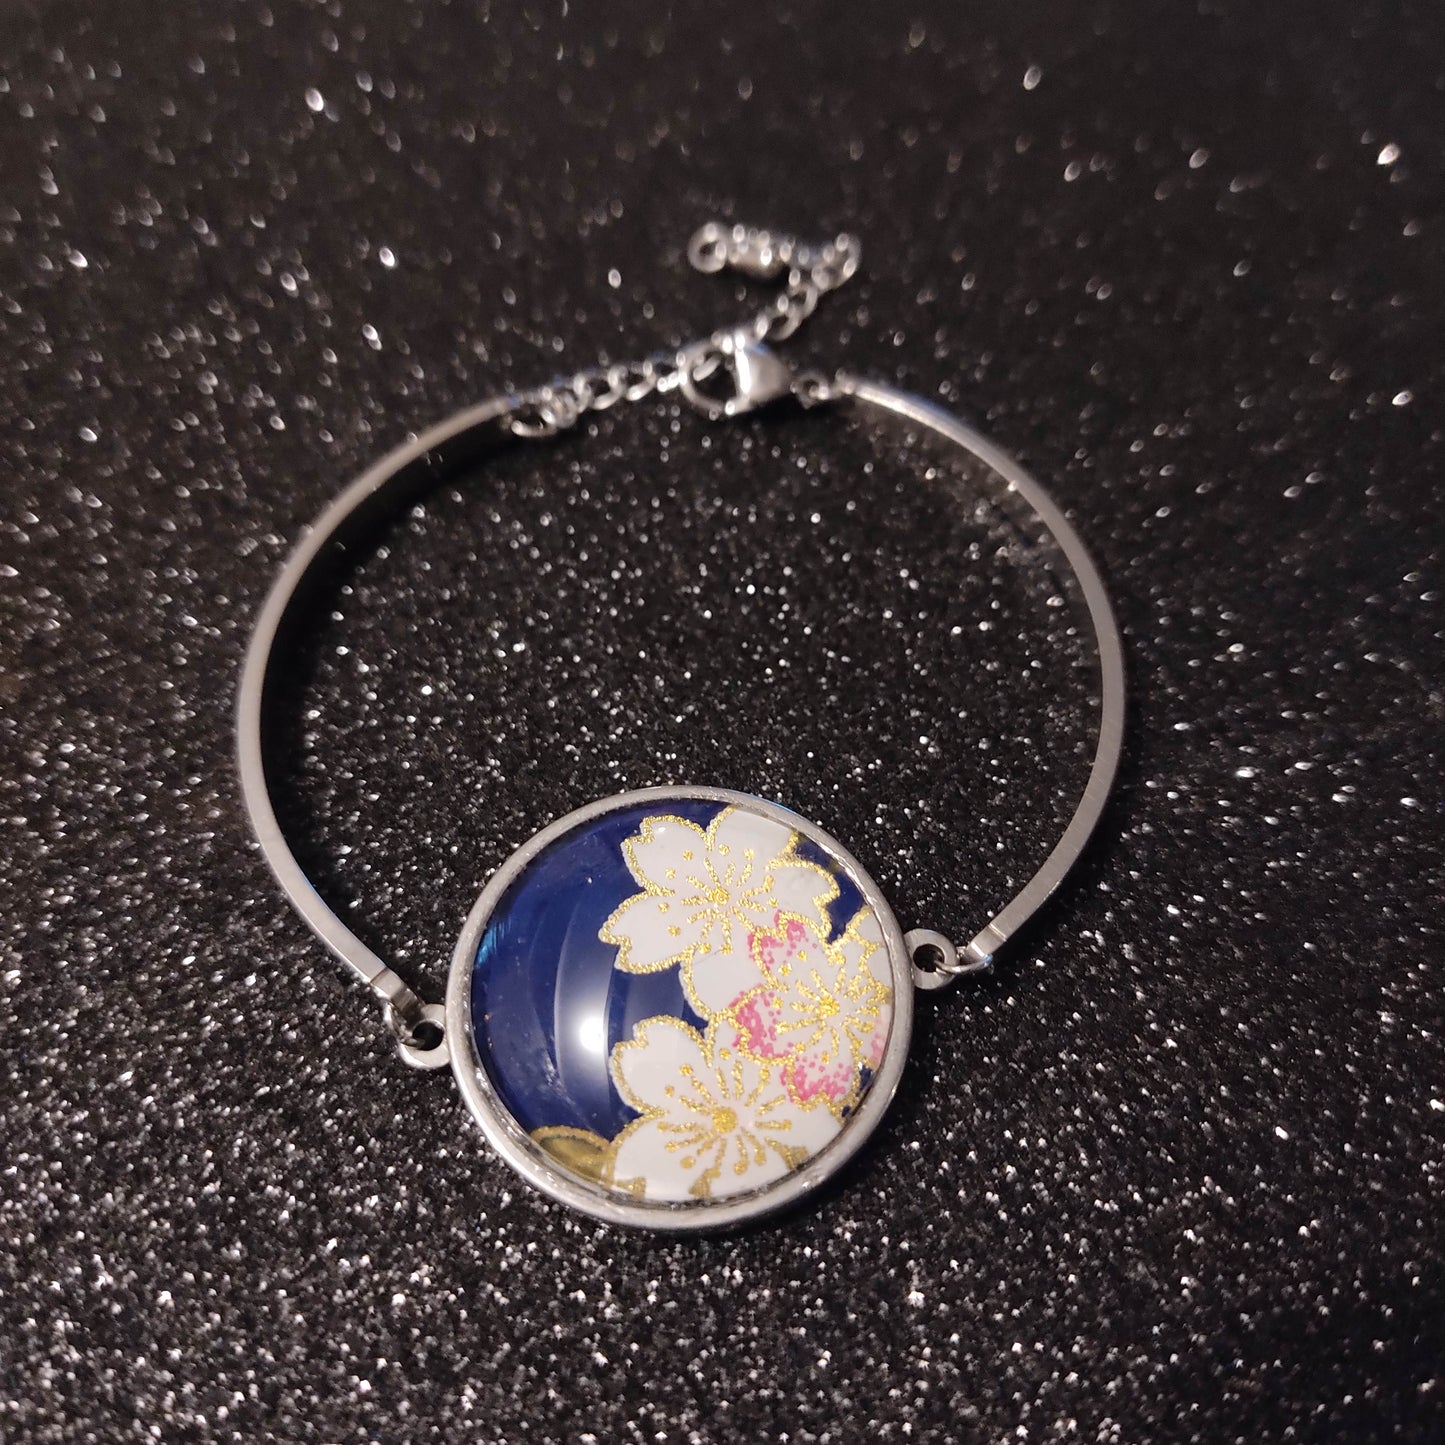 Bracelet rigide acier inoxydable - 25mm - Papier japonais fleurs blanches et rose - Bleu nuit